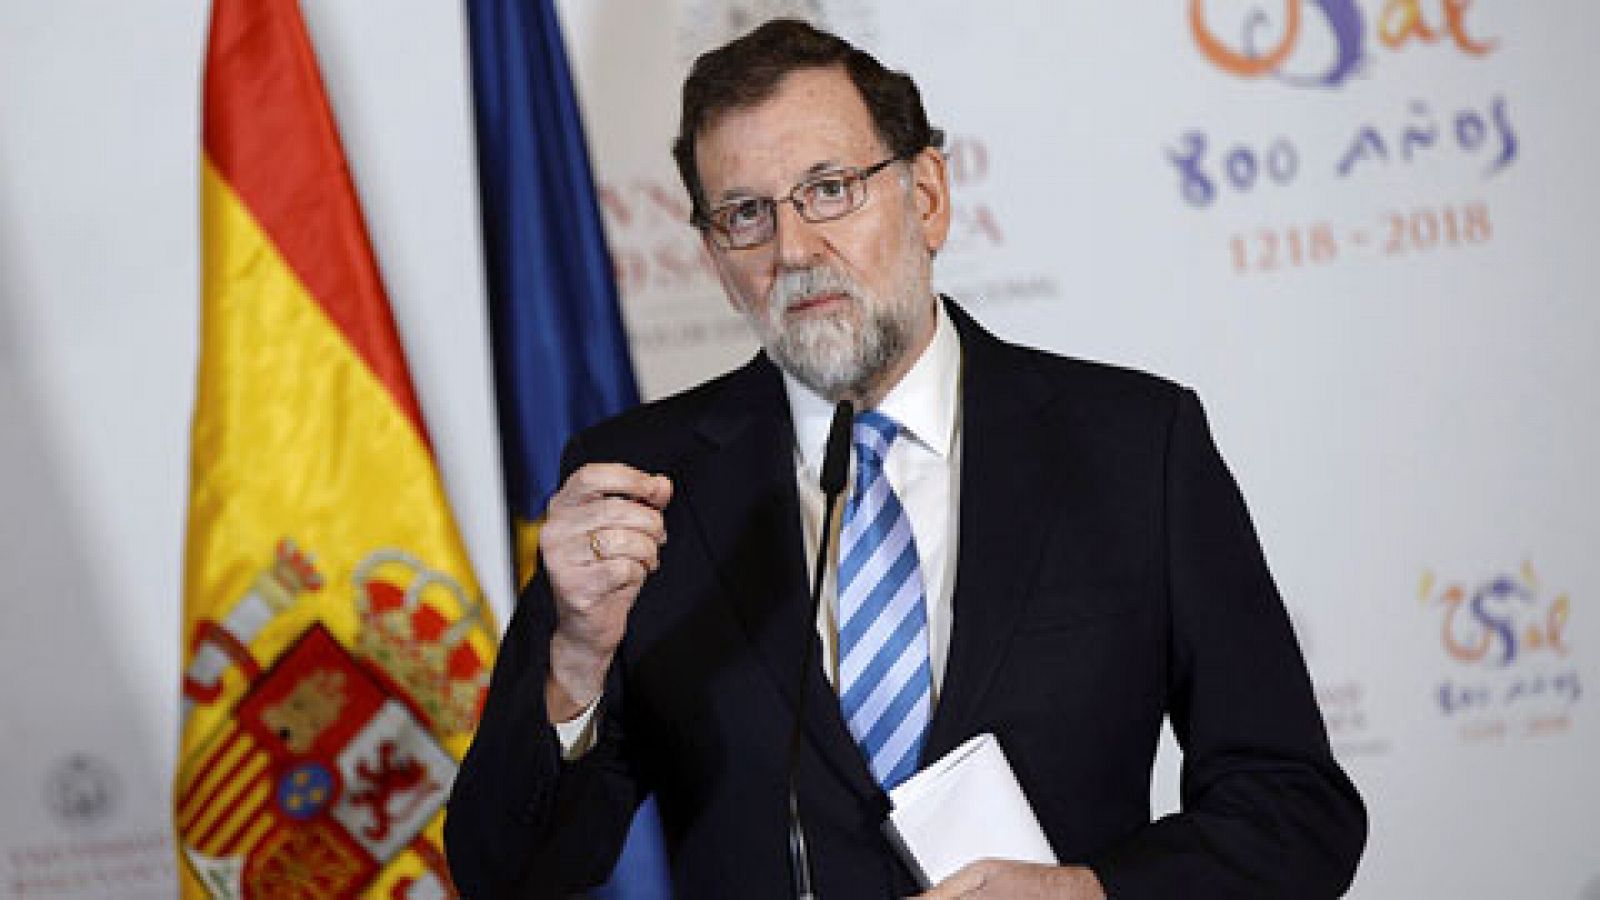 Independencia en Cataluña: Rajoy: "Espero que el 21D abra una nueva etapa" - RTVE.es